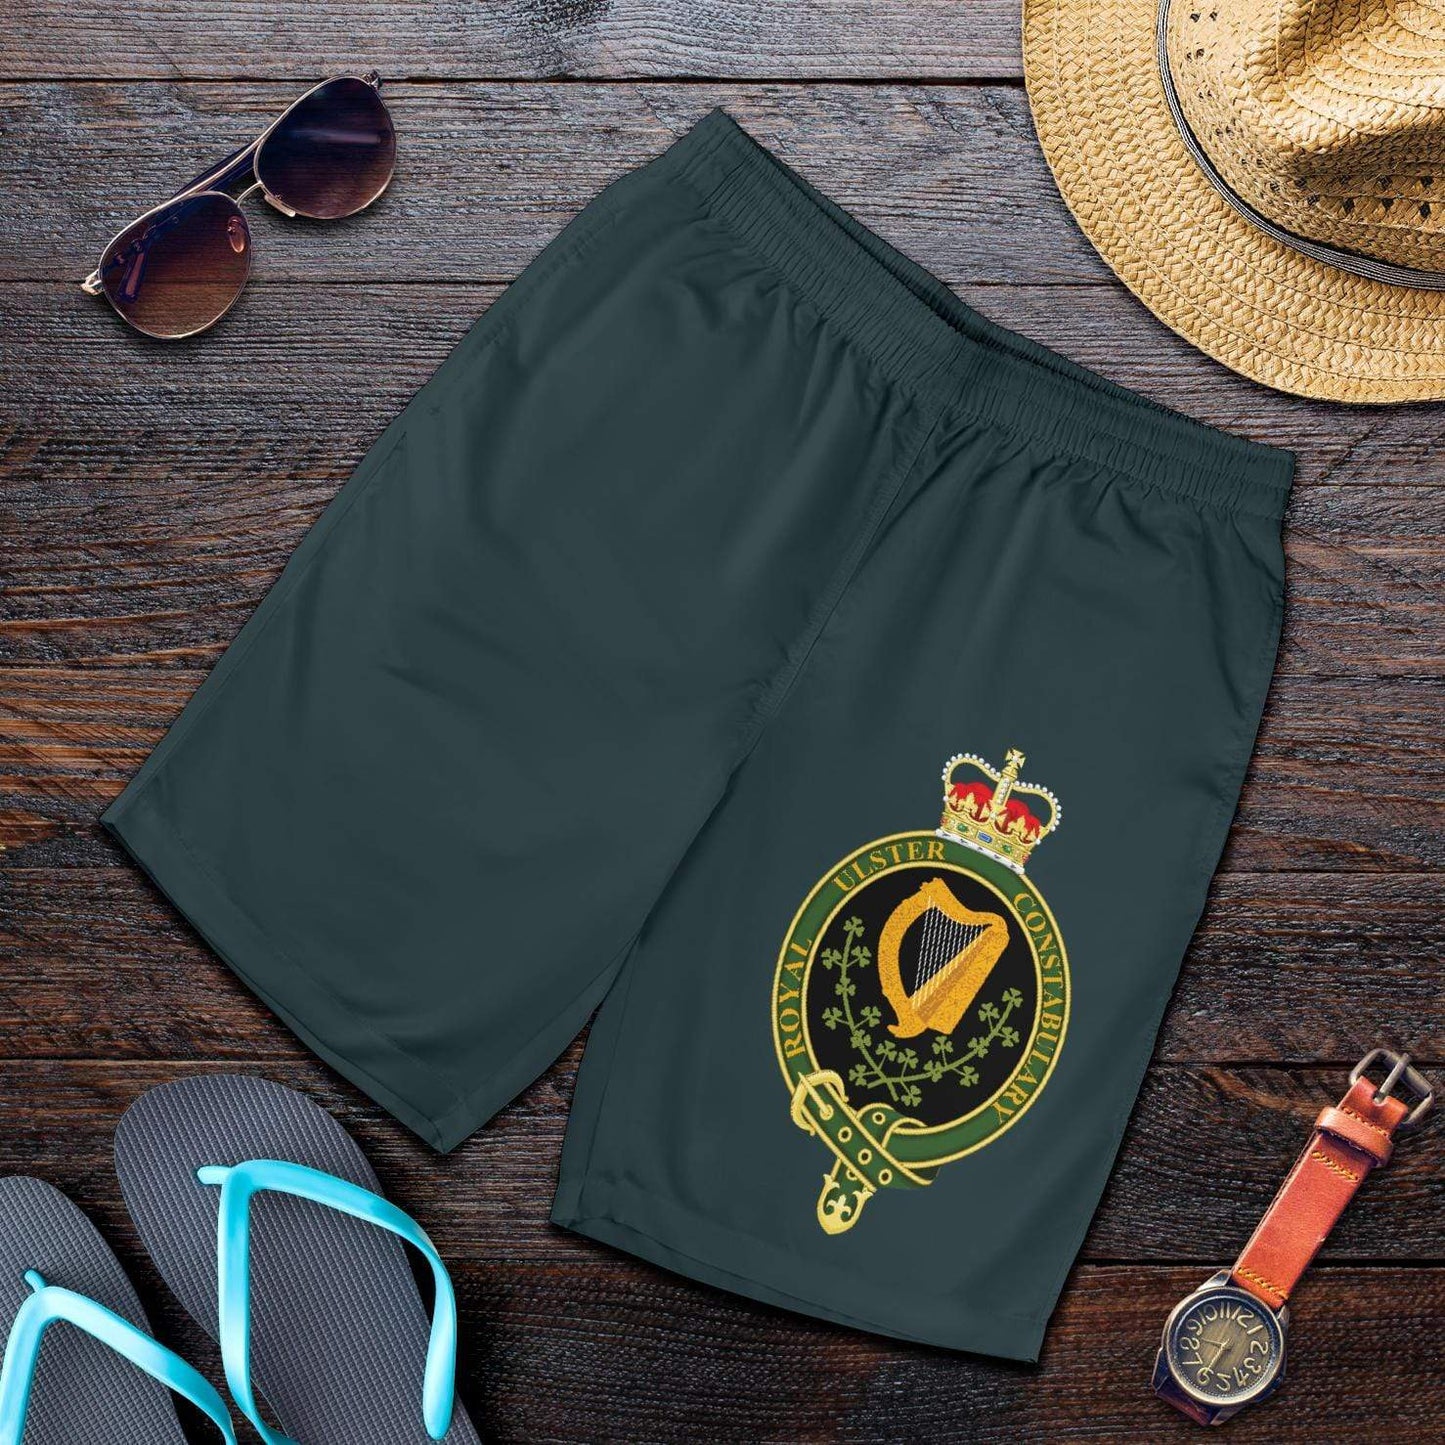 shorts Royal Ulster Constabulary Men's Shorts